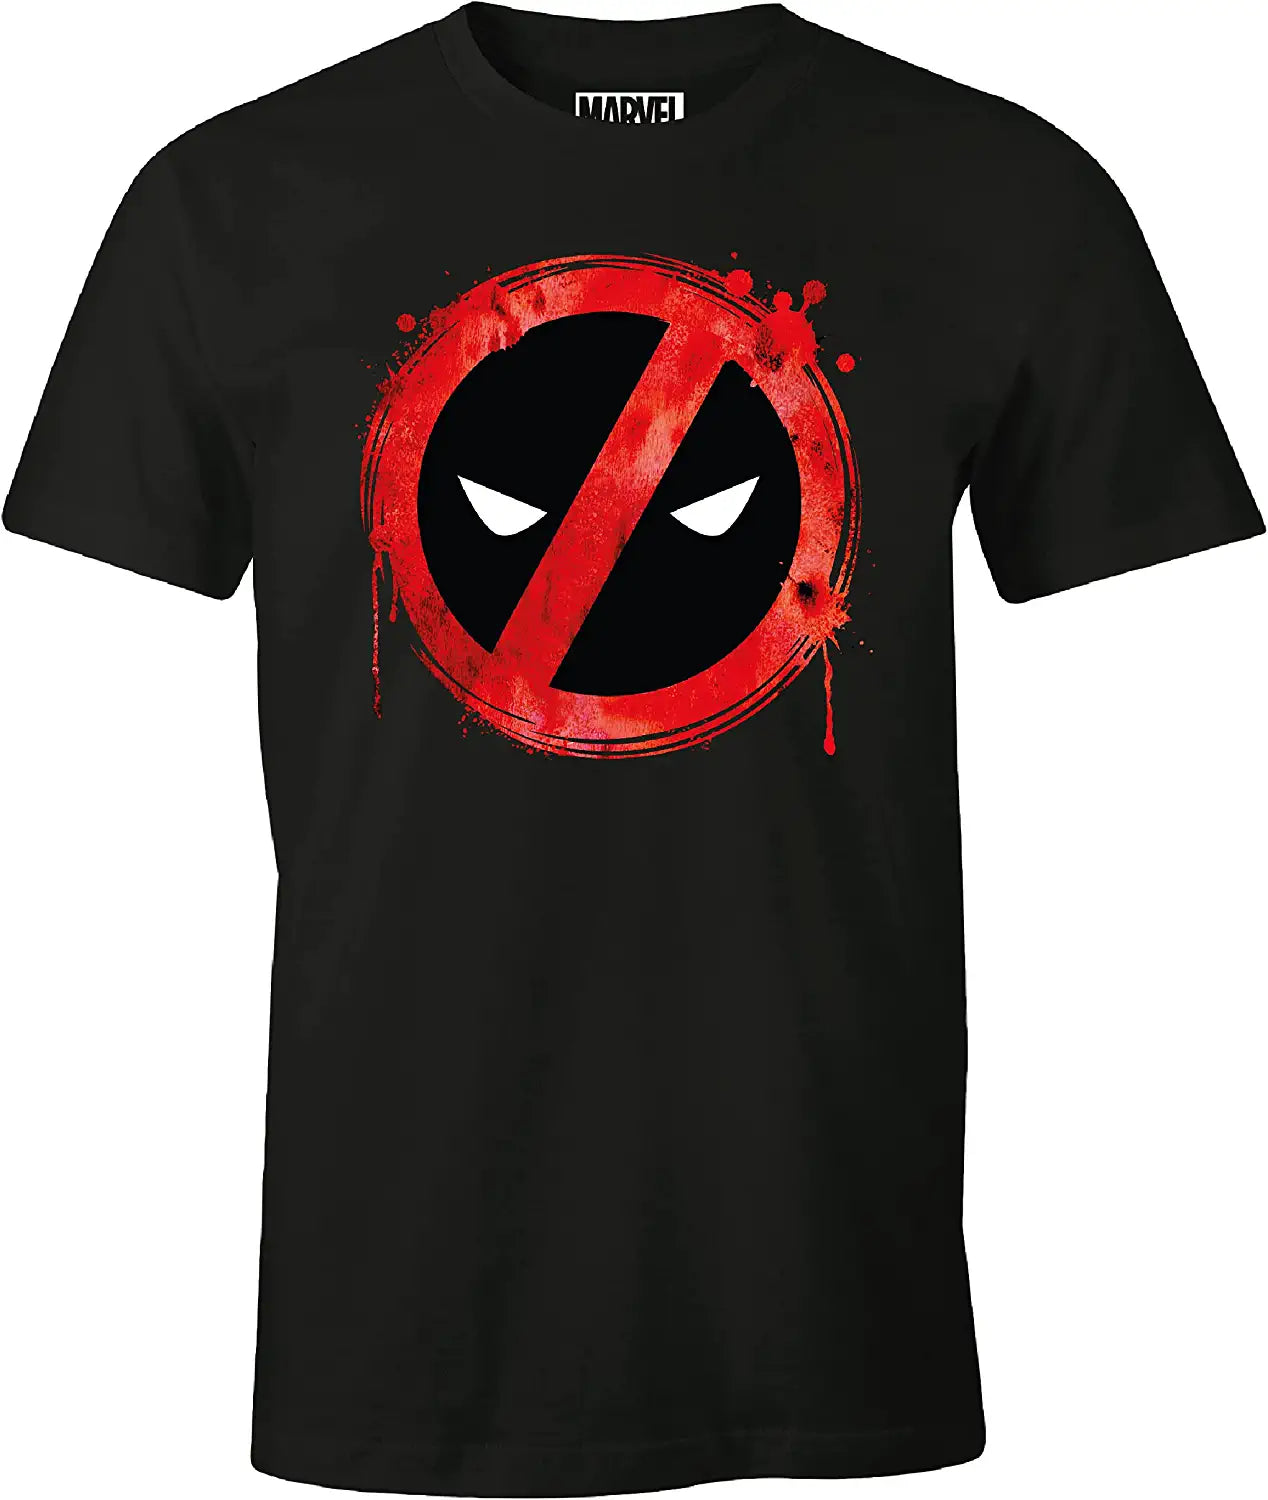 Marvel - Deadpool Forbidden Splash Head Black T-Shirt - M